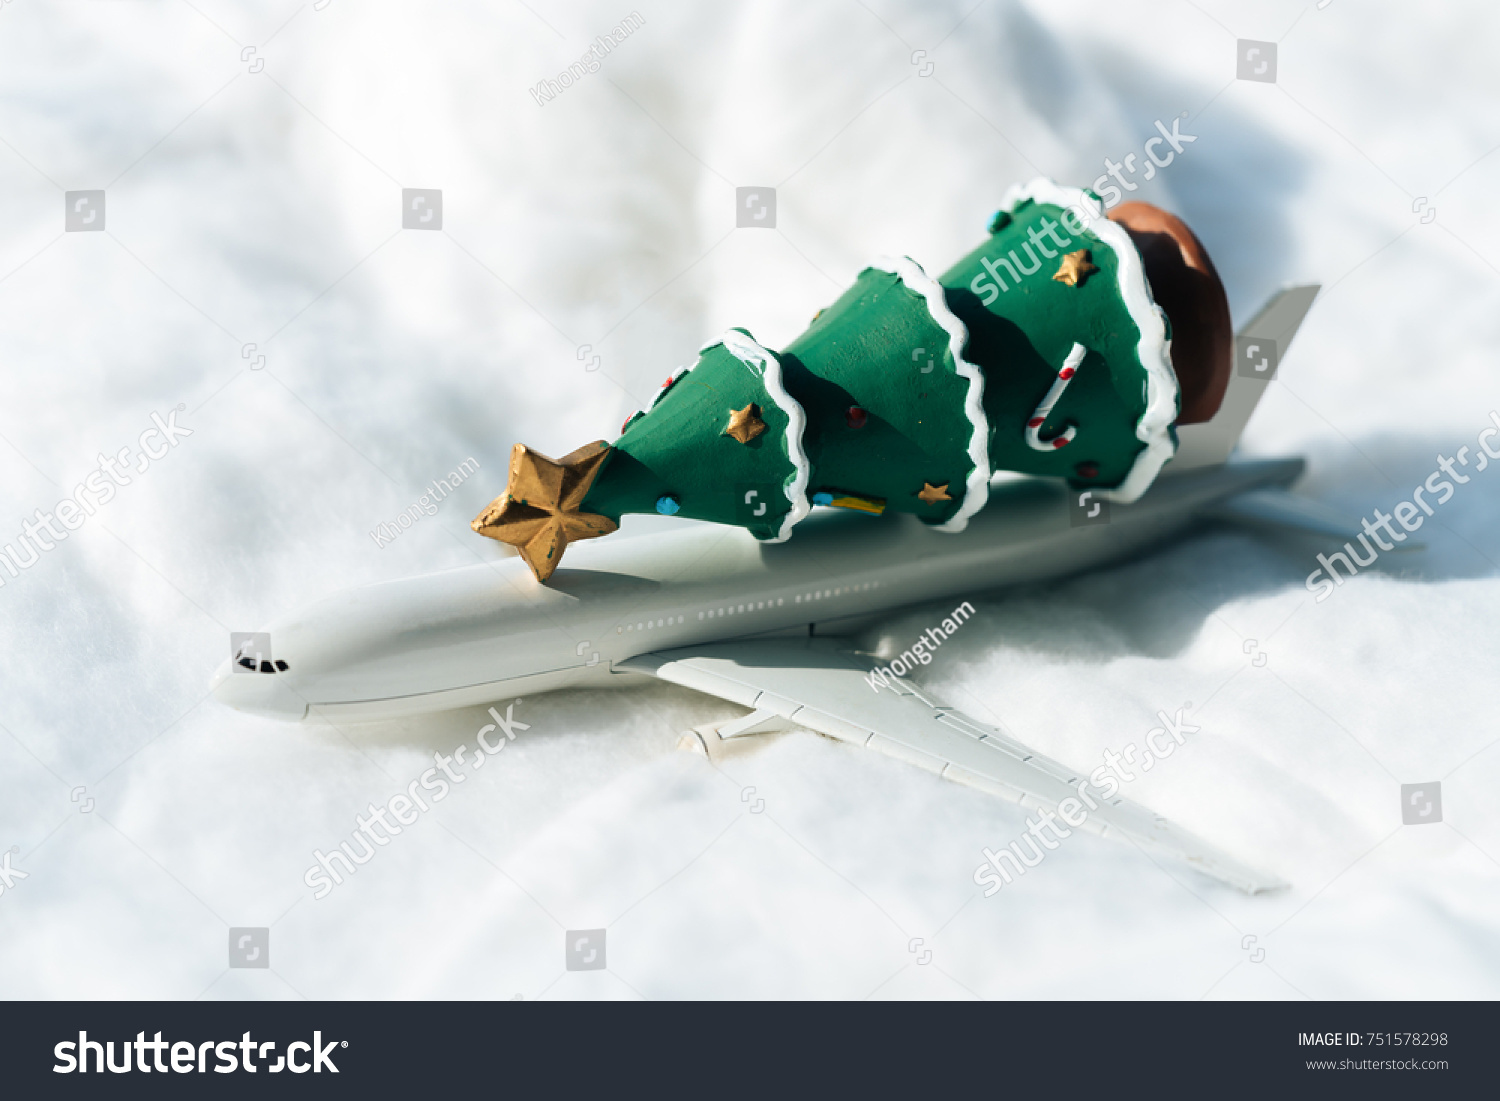 Airplane Z Snow sled